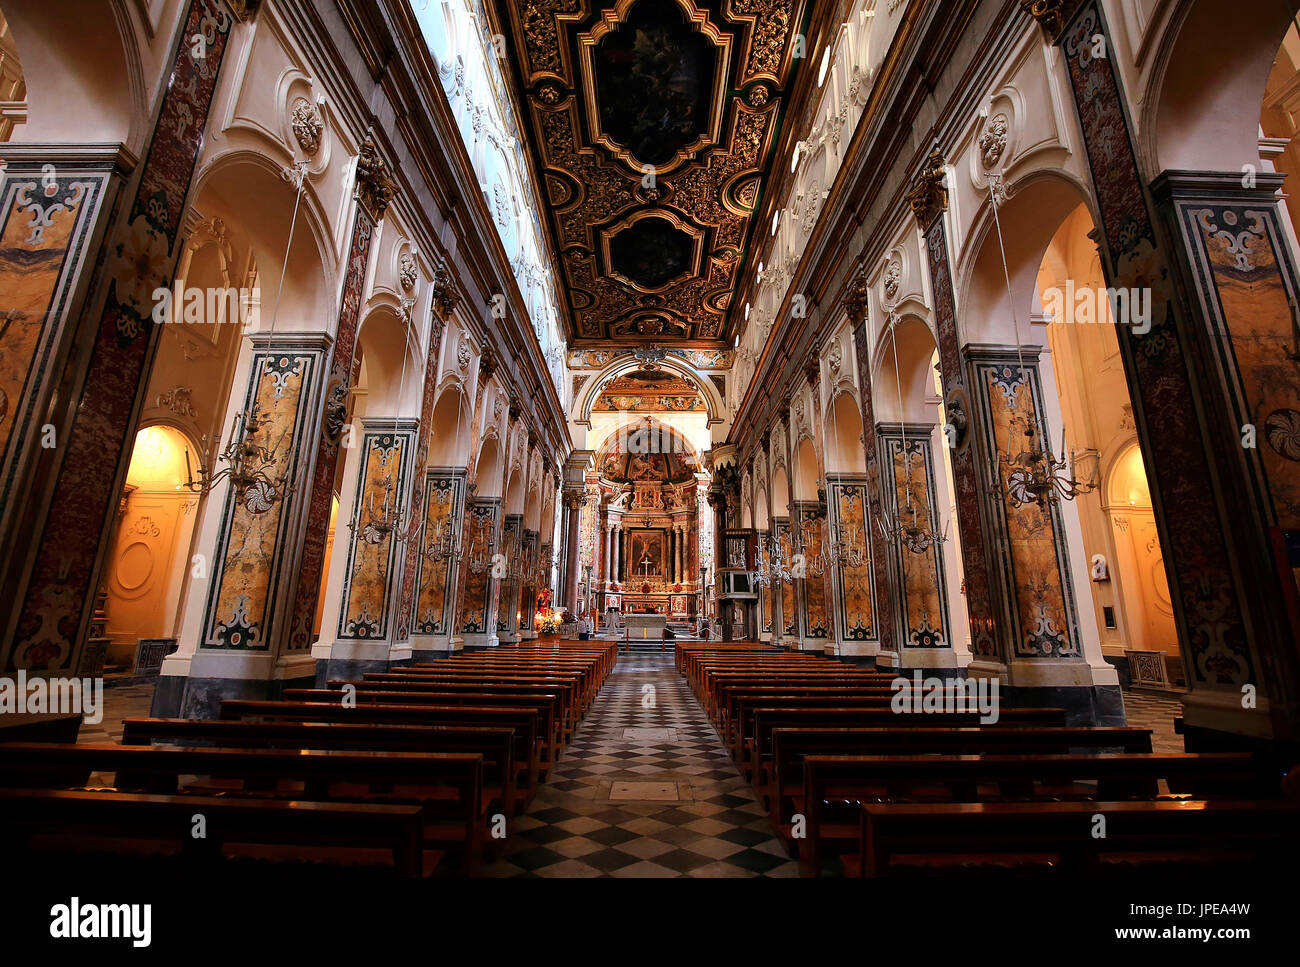 Der hl. Andreas Kathedrale ist der wichtigste Ort des katholischen Gottesdienstes in Amalfi, Episcopalian homonym Erzdiözese. Gewidmet Saint Andrew der Apostel. Kampanien, Italien Stockfoto